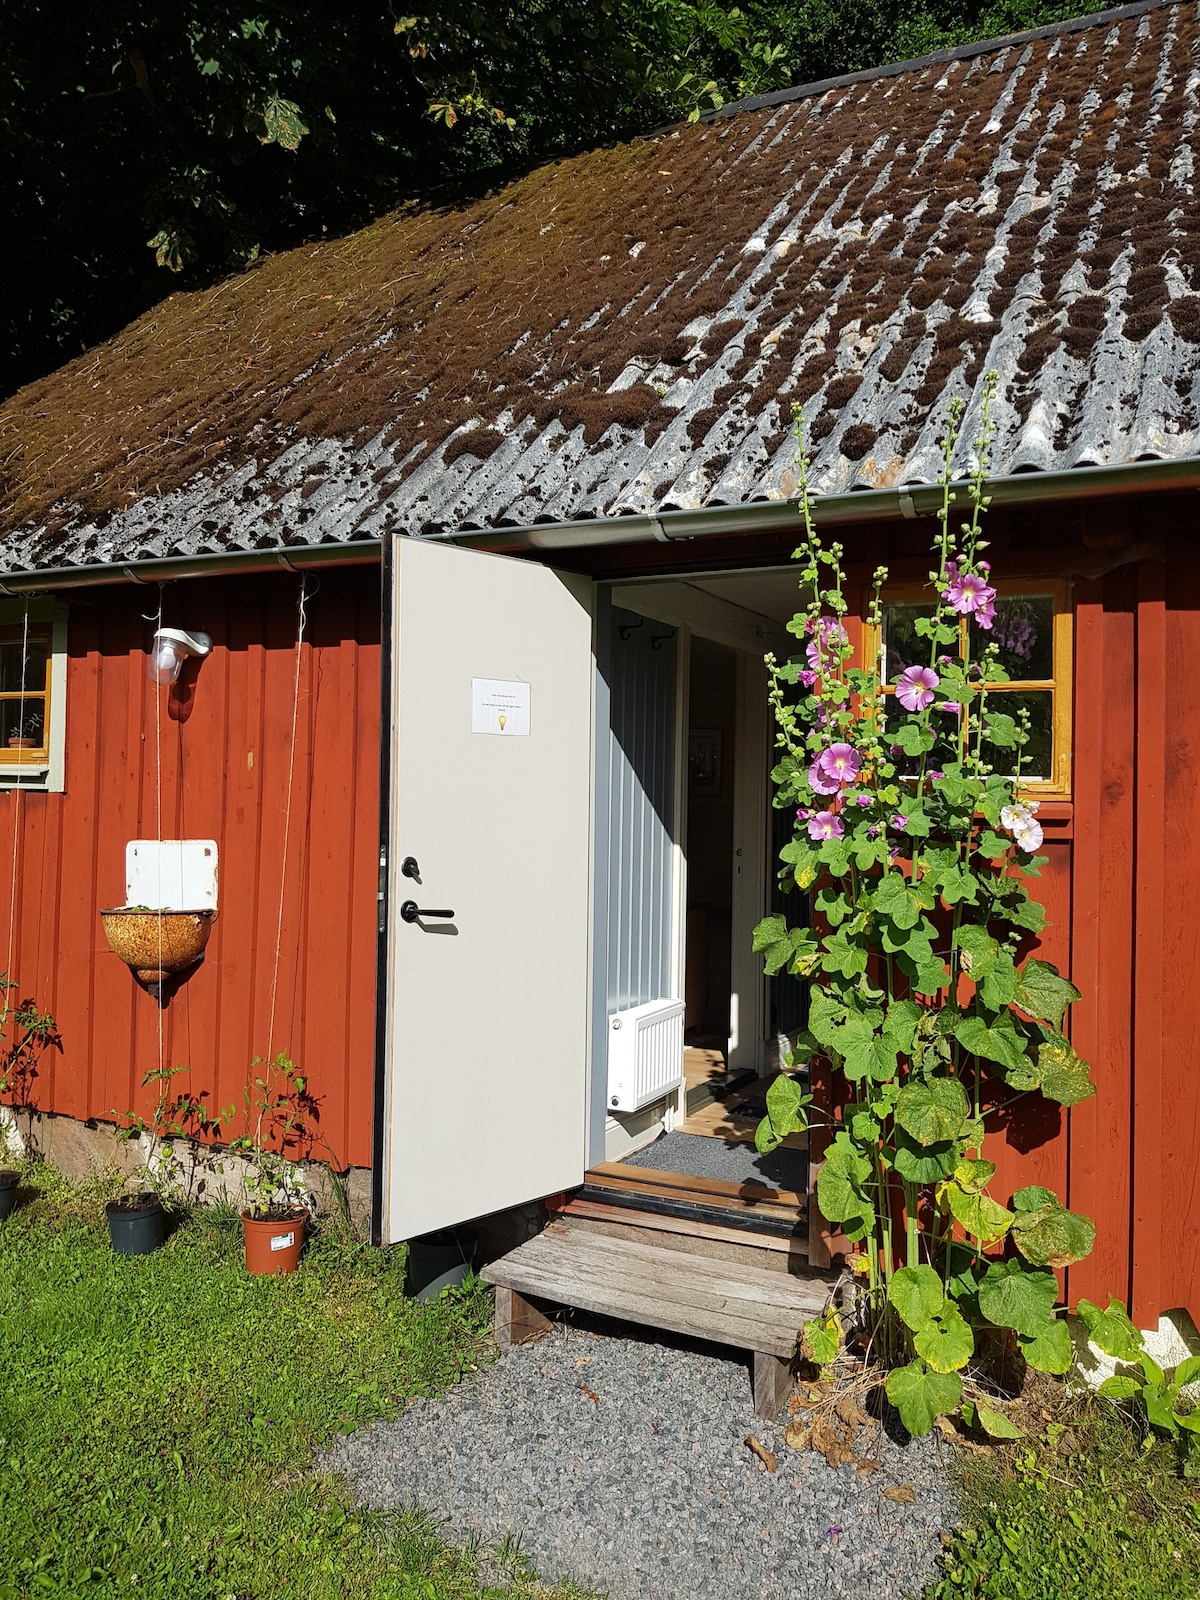 4-person farmhouse stay in Halland